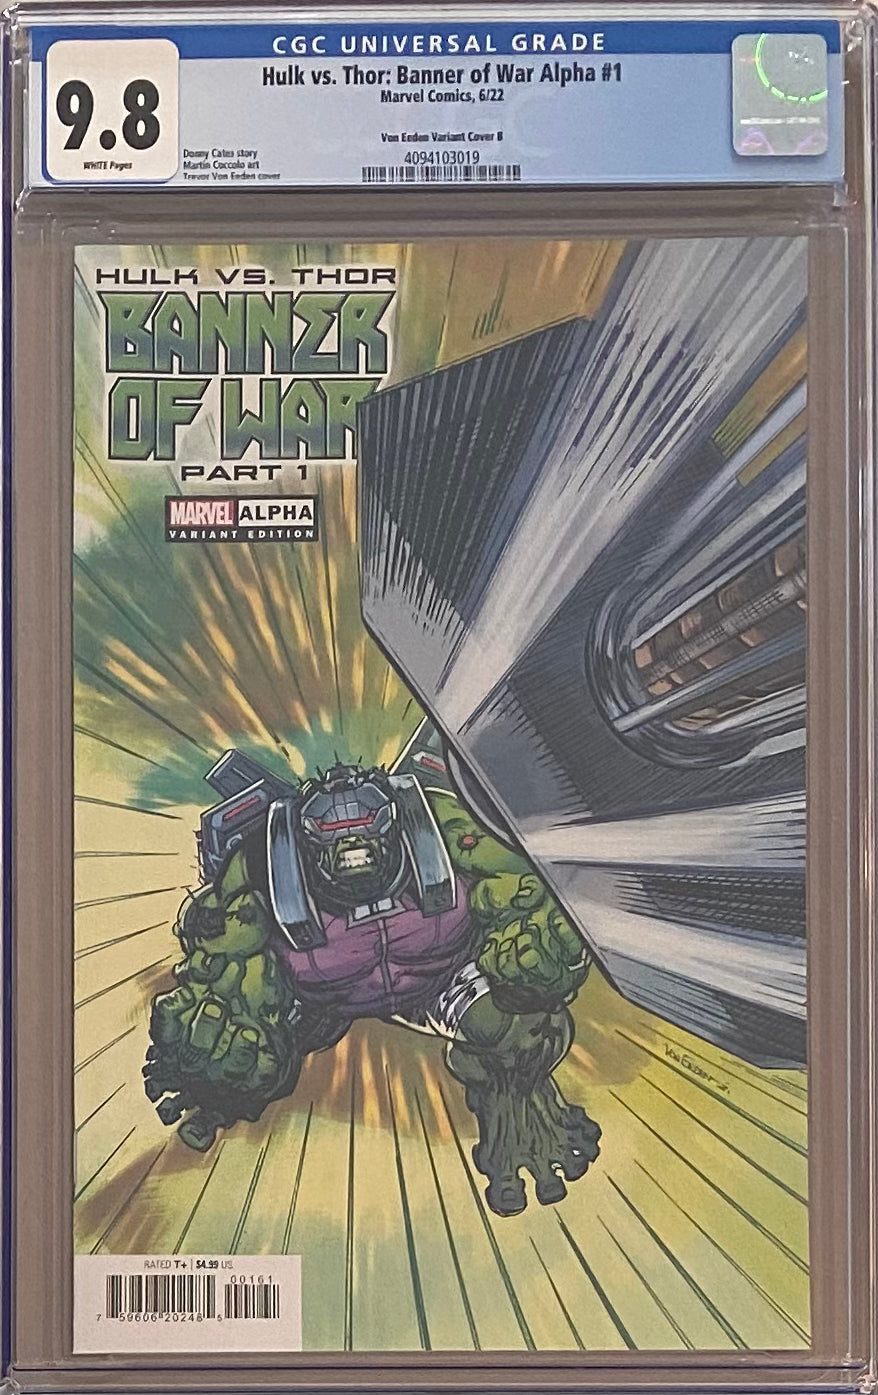 Hulk vs. Thor: Banner of War #1 Von Eeden "Hulk" Variant B CGC 9.8